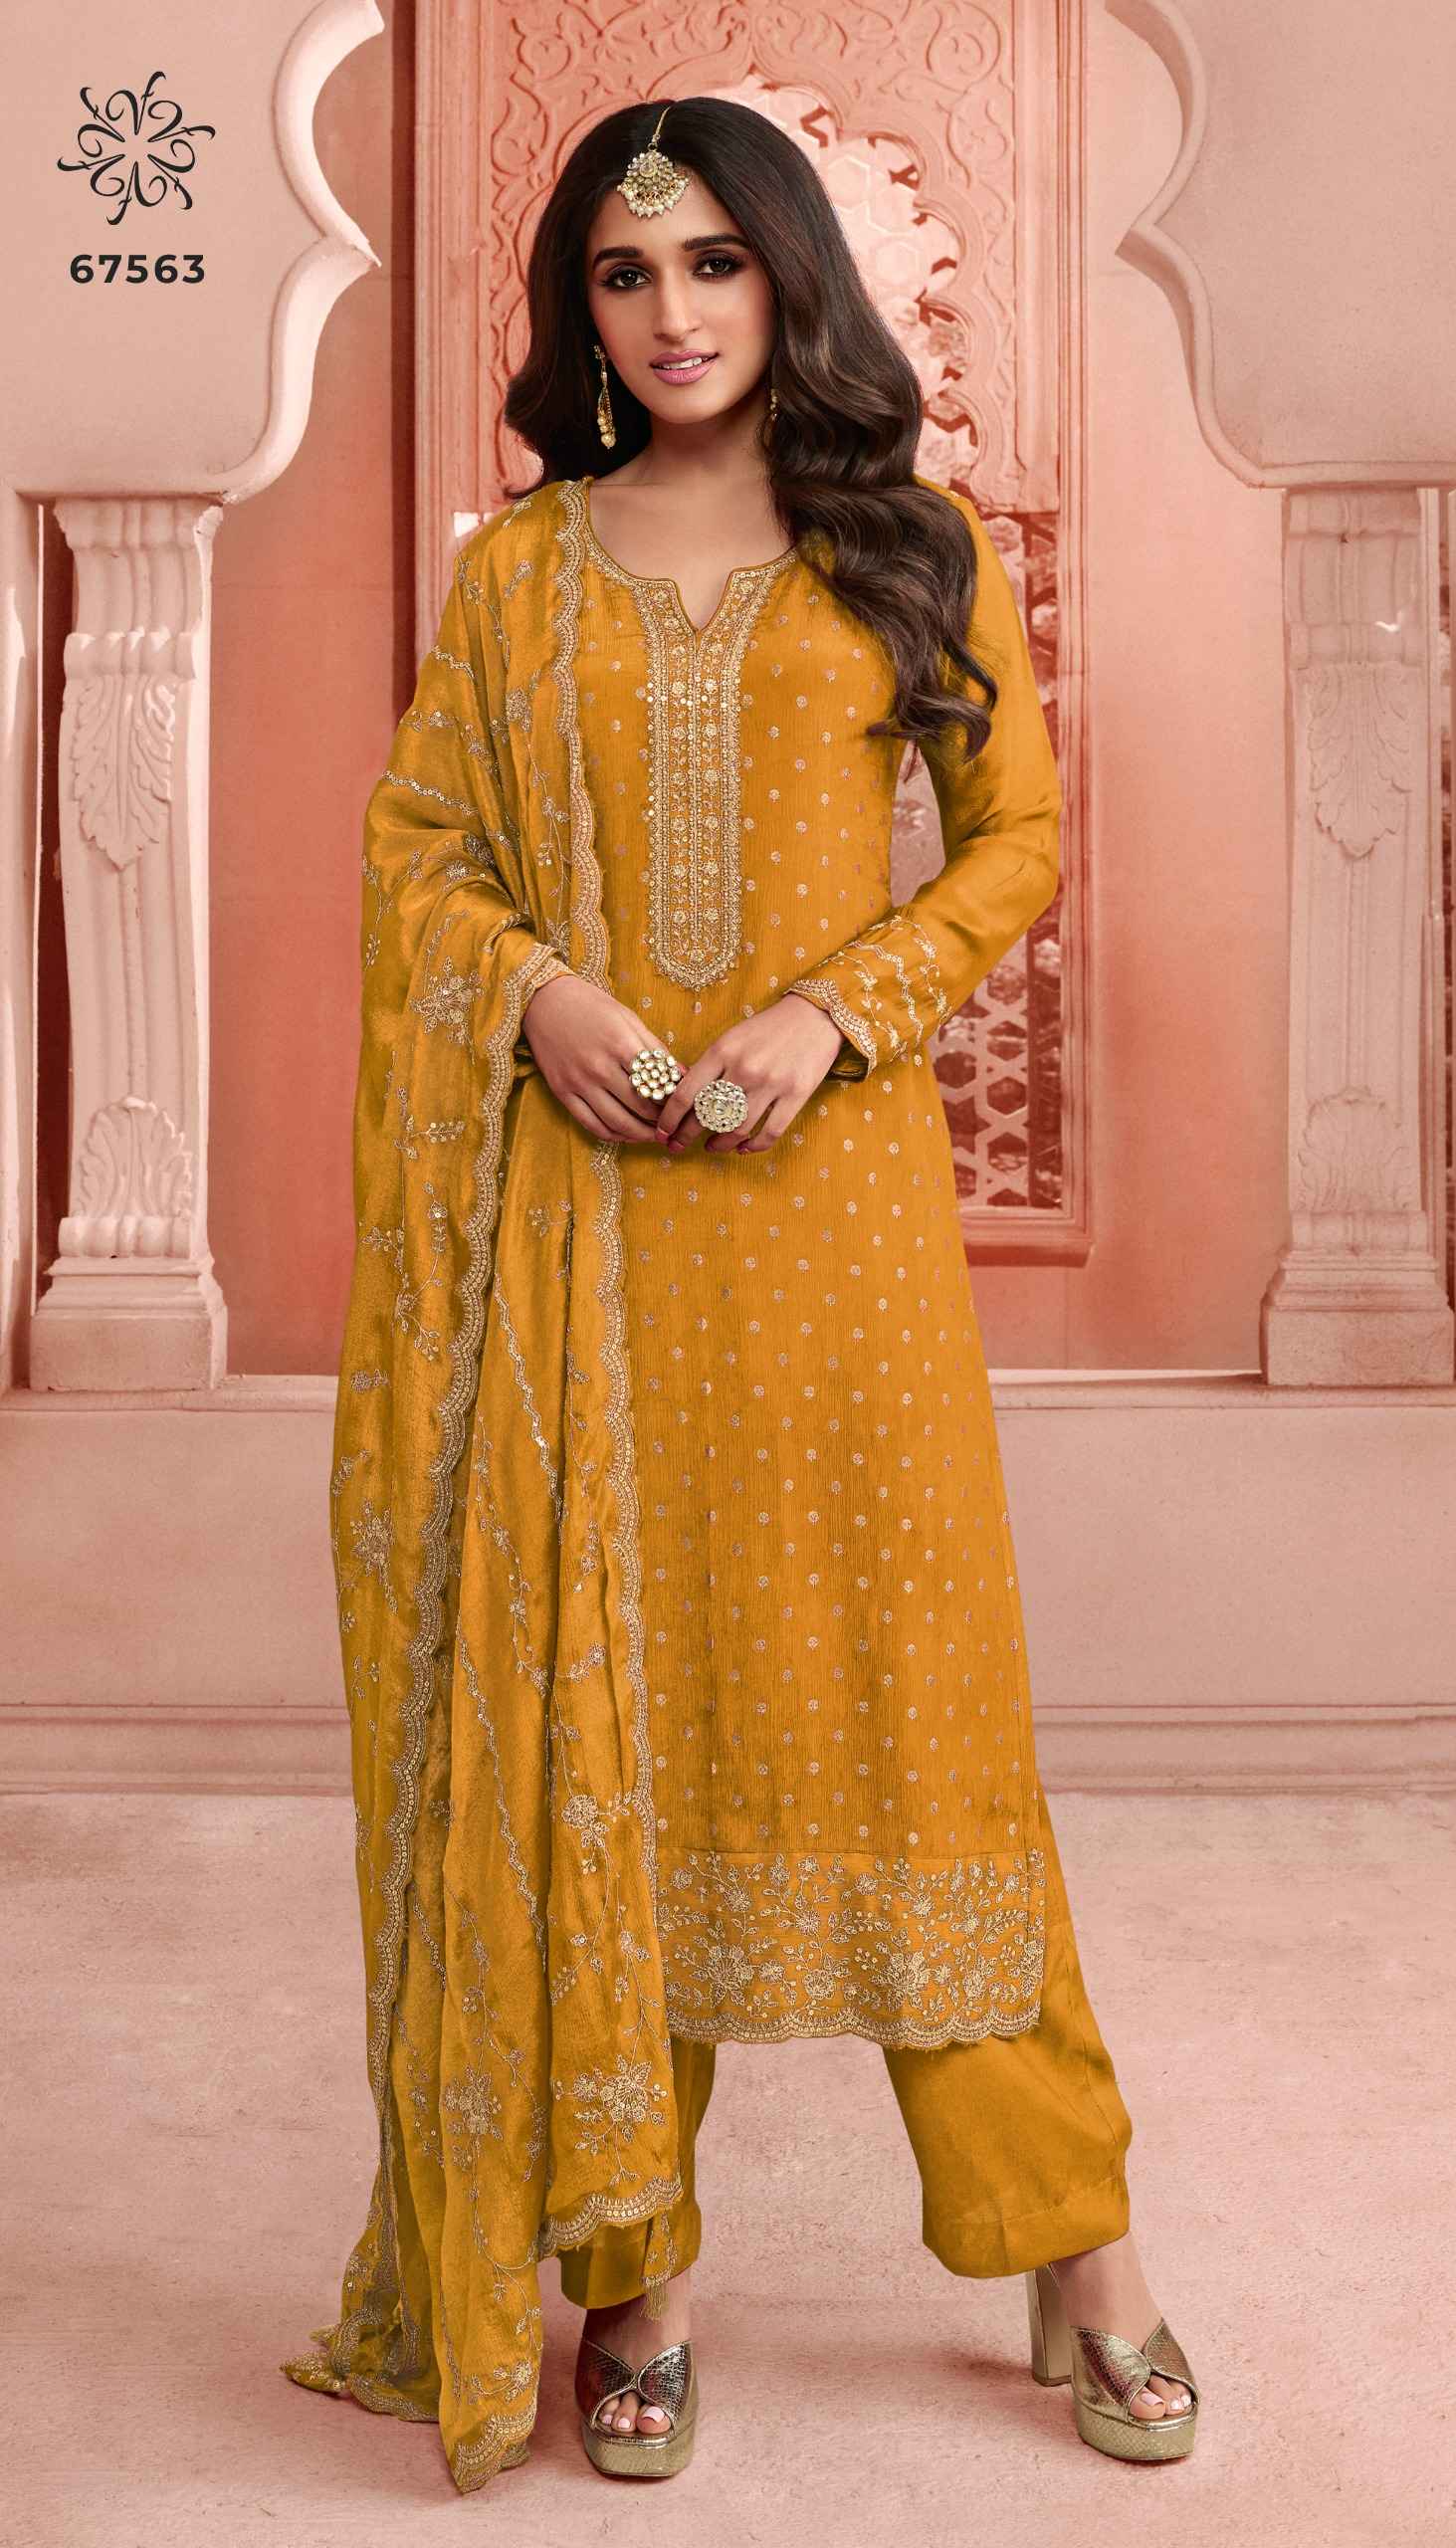 Vinay Kuleesh Swarnaa Colour Plus Dress Material (6 Pc Catalog)